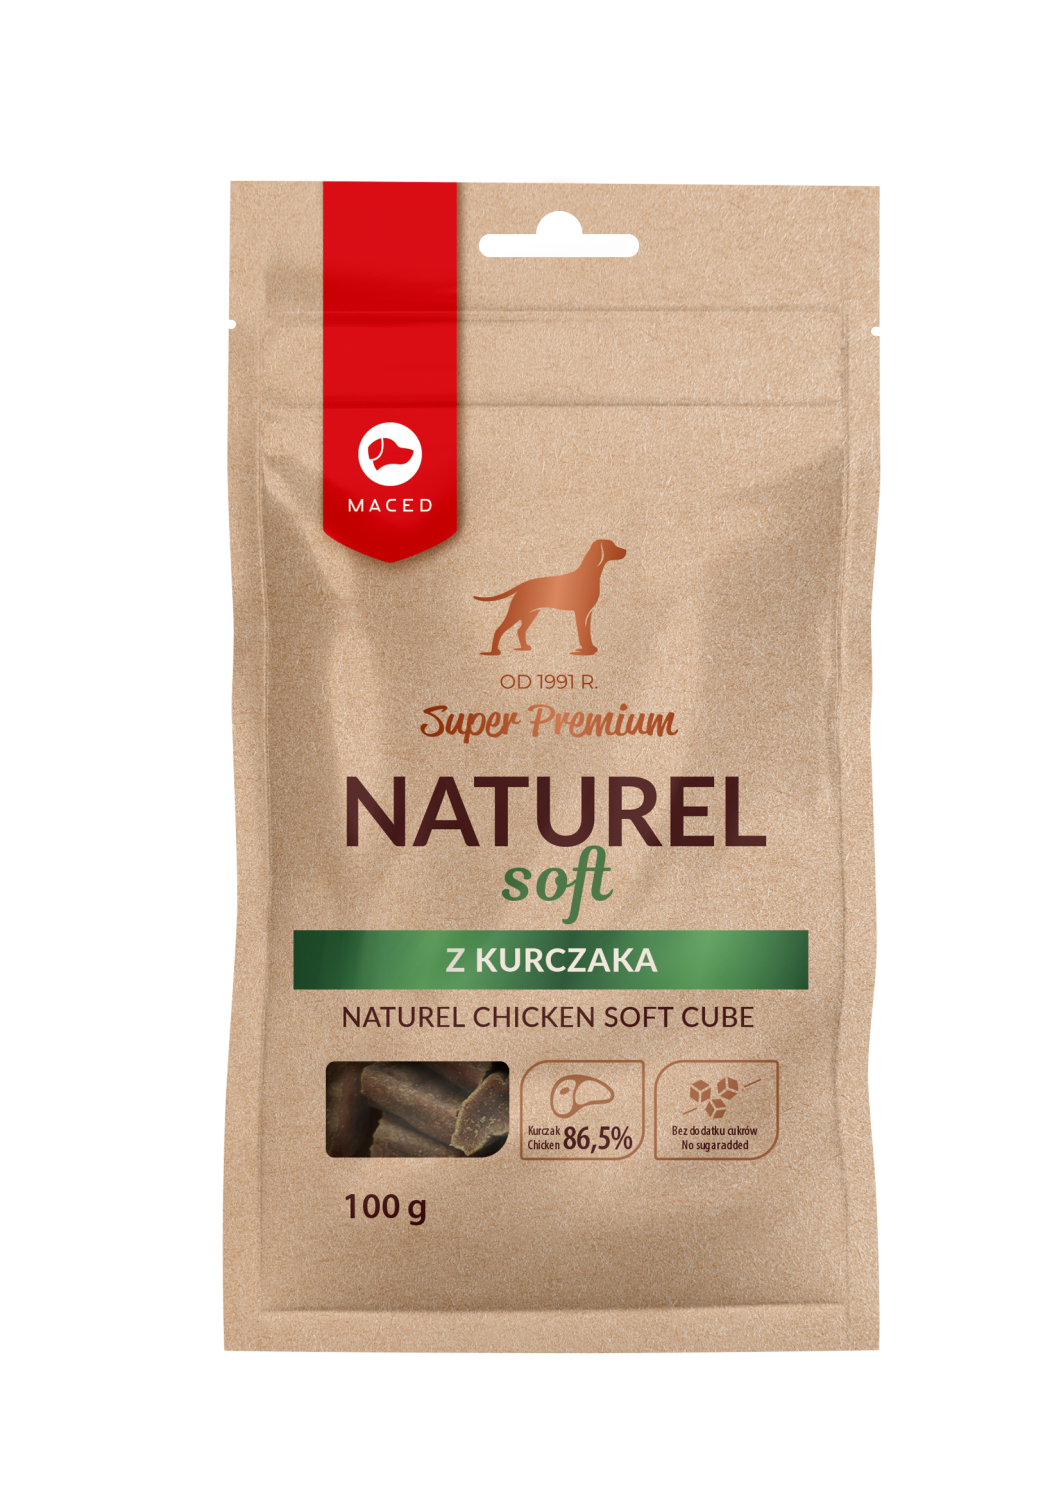 Maced Super Premium Narurel Soft przysmak dla psa z kurczaka 100g